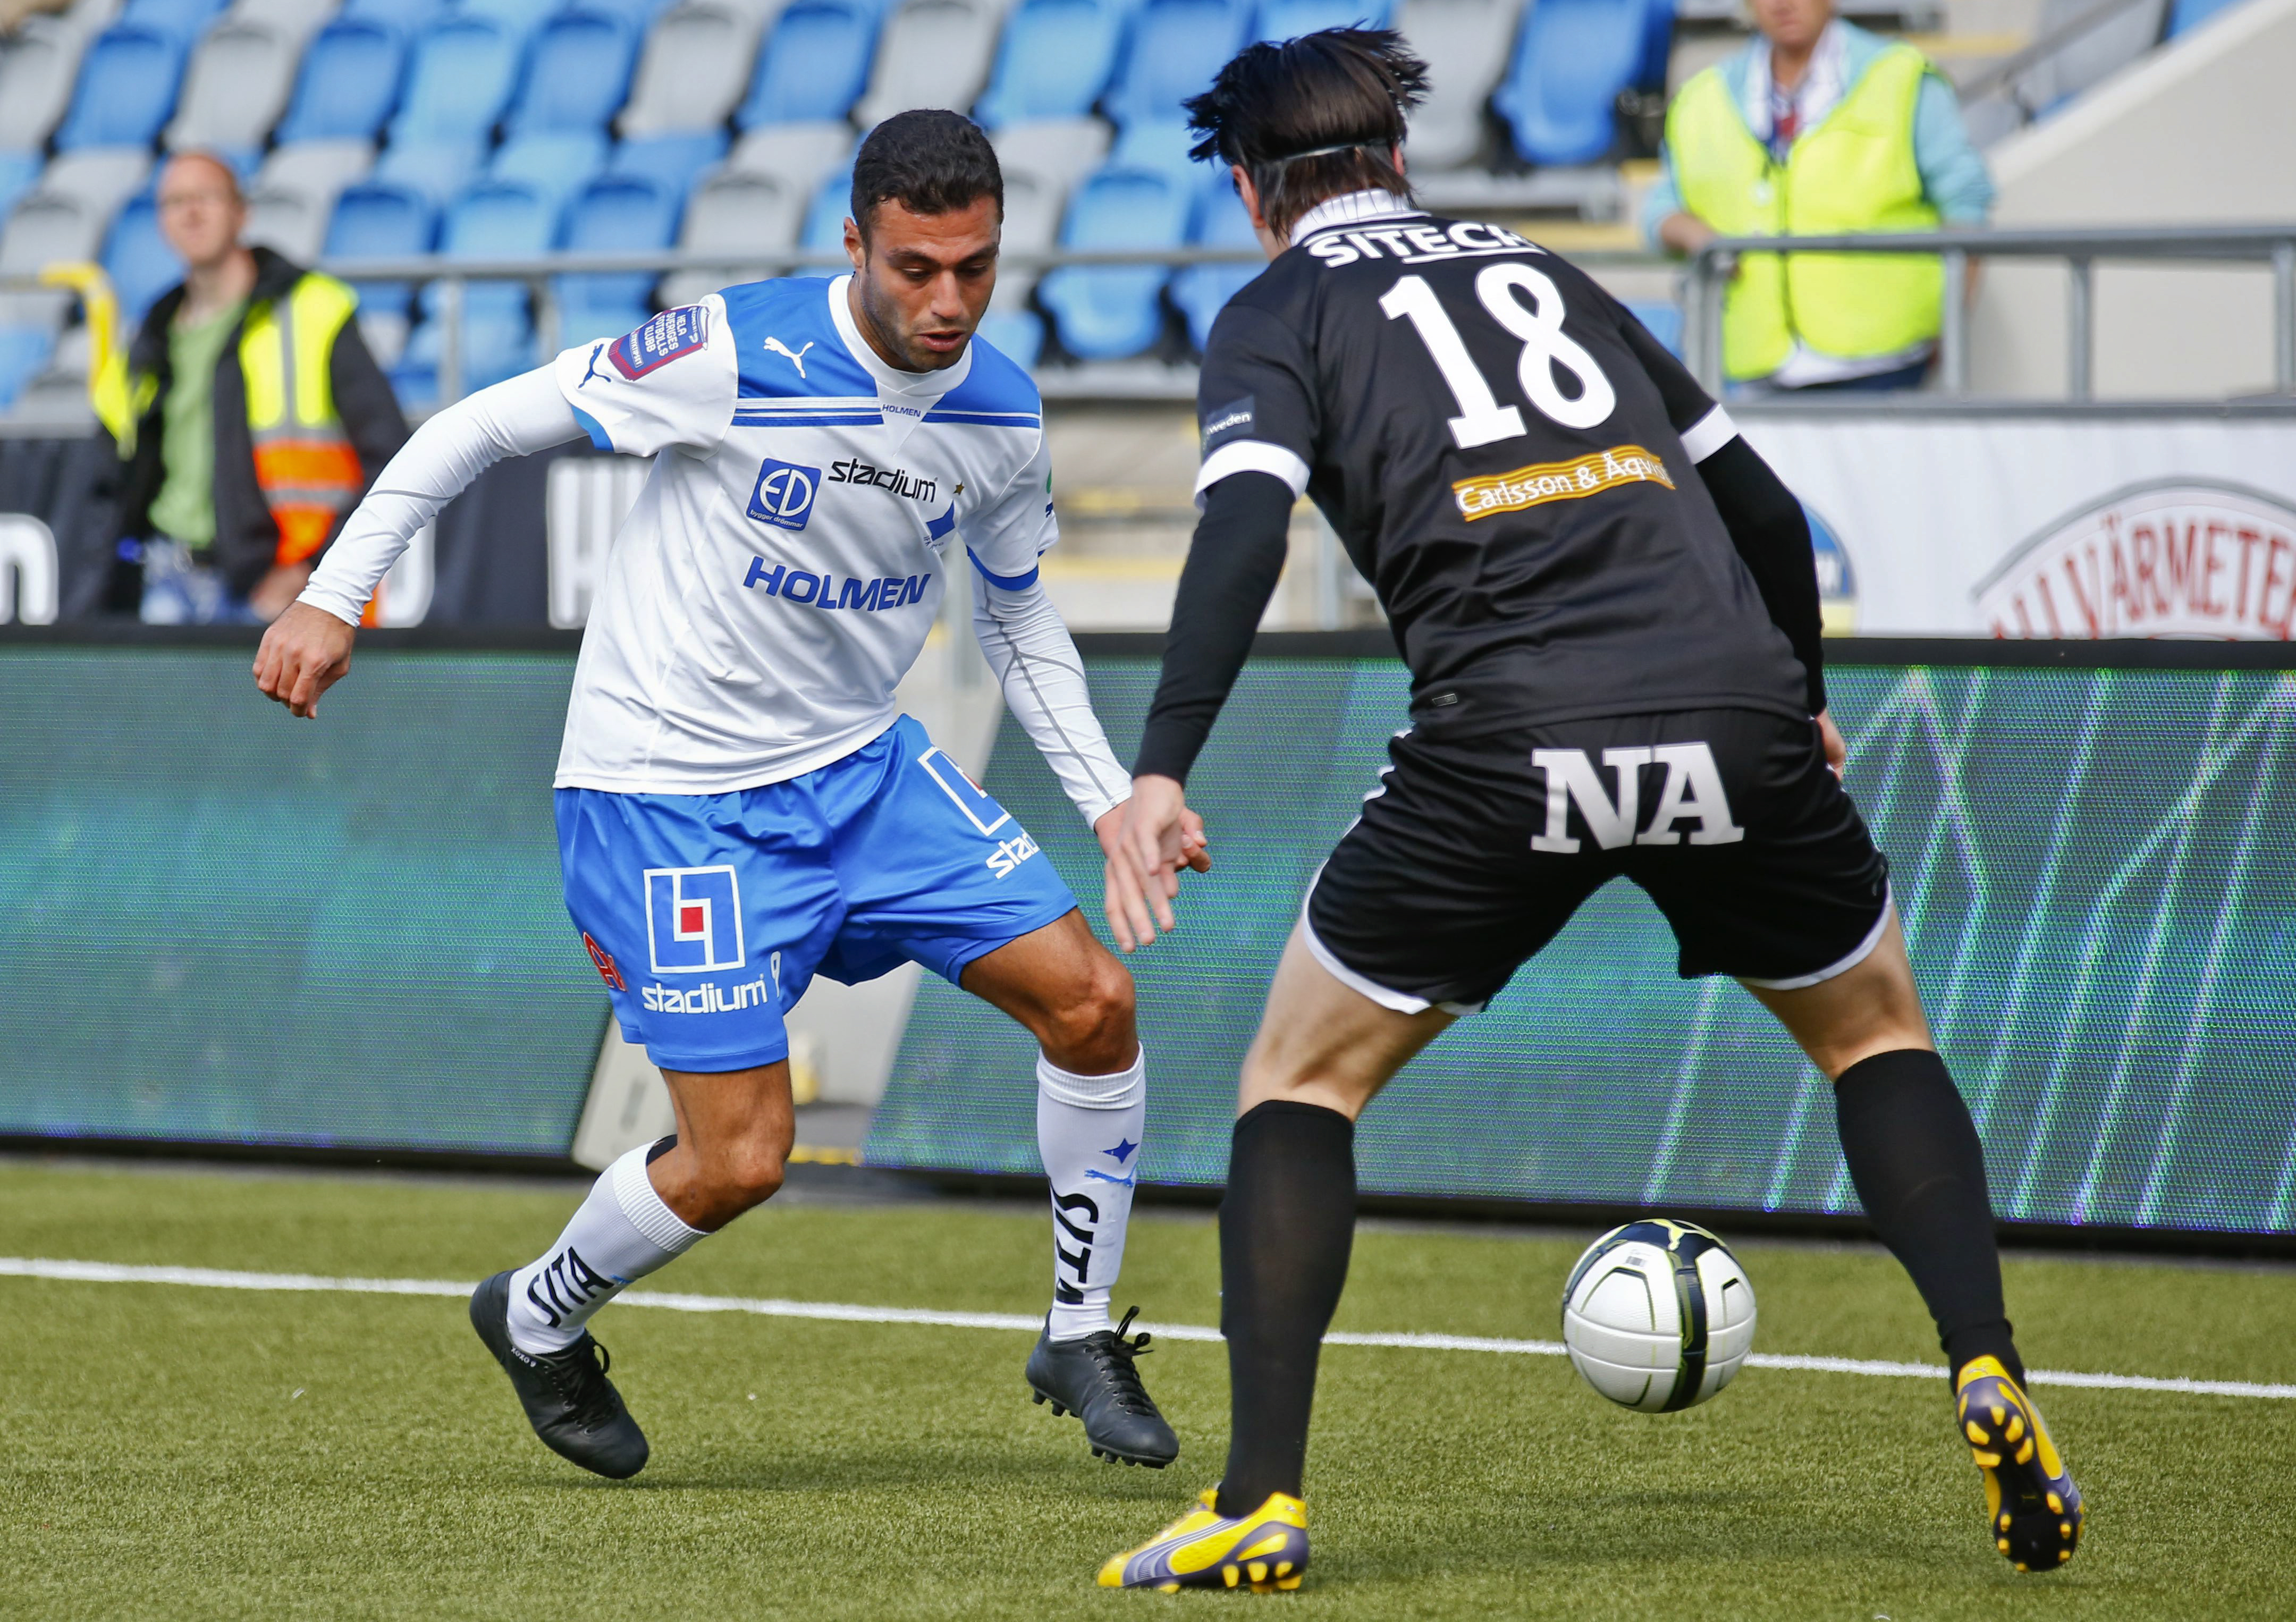 Imad Khalili, Örebro, Allsvenskan, Fotboll, ÖSK, IFK Norrköping